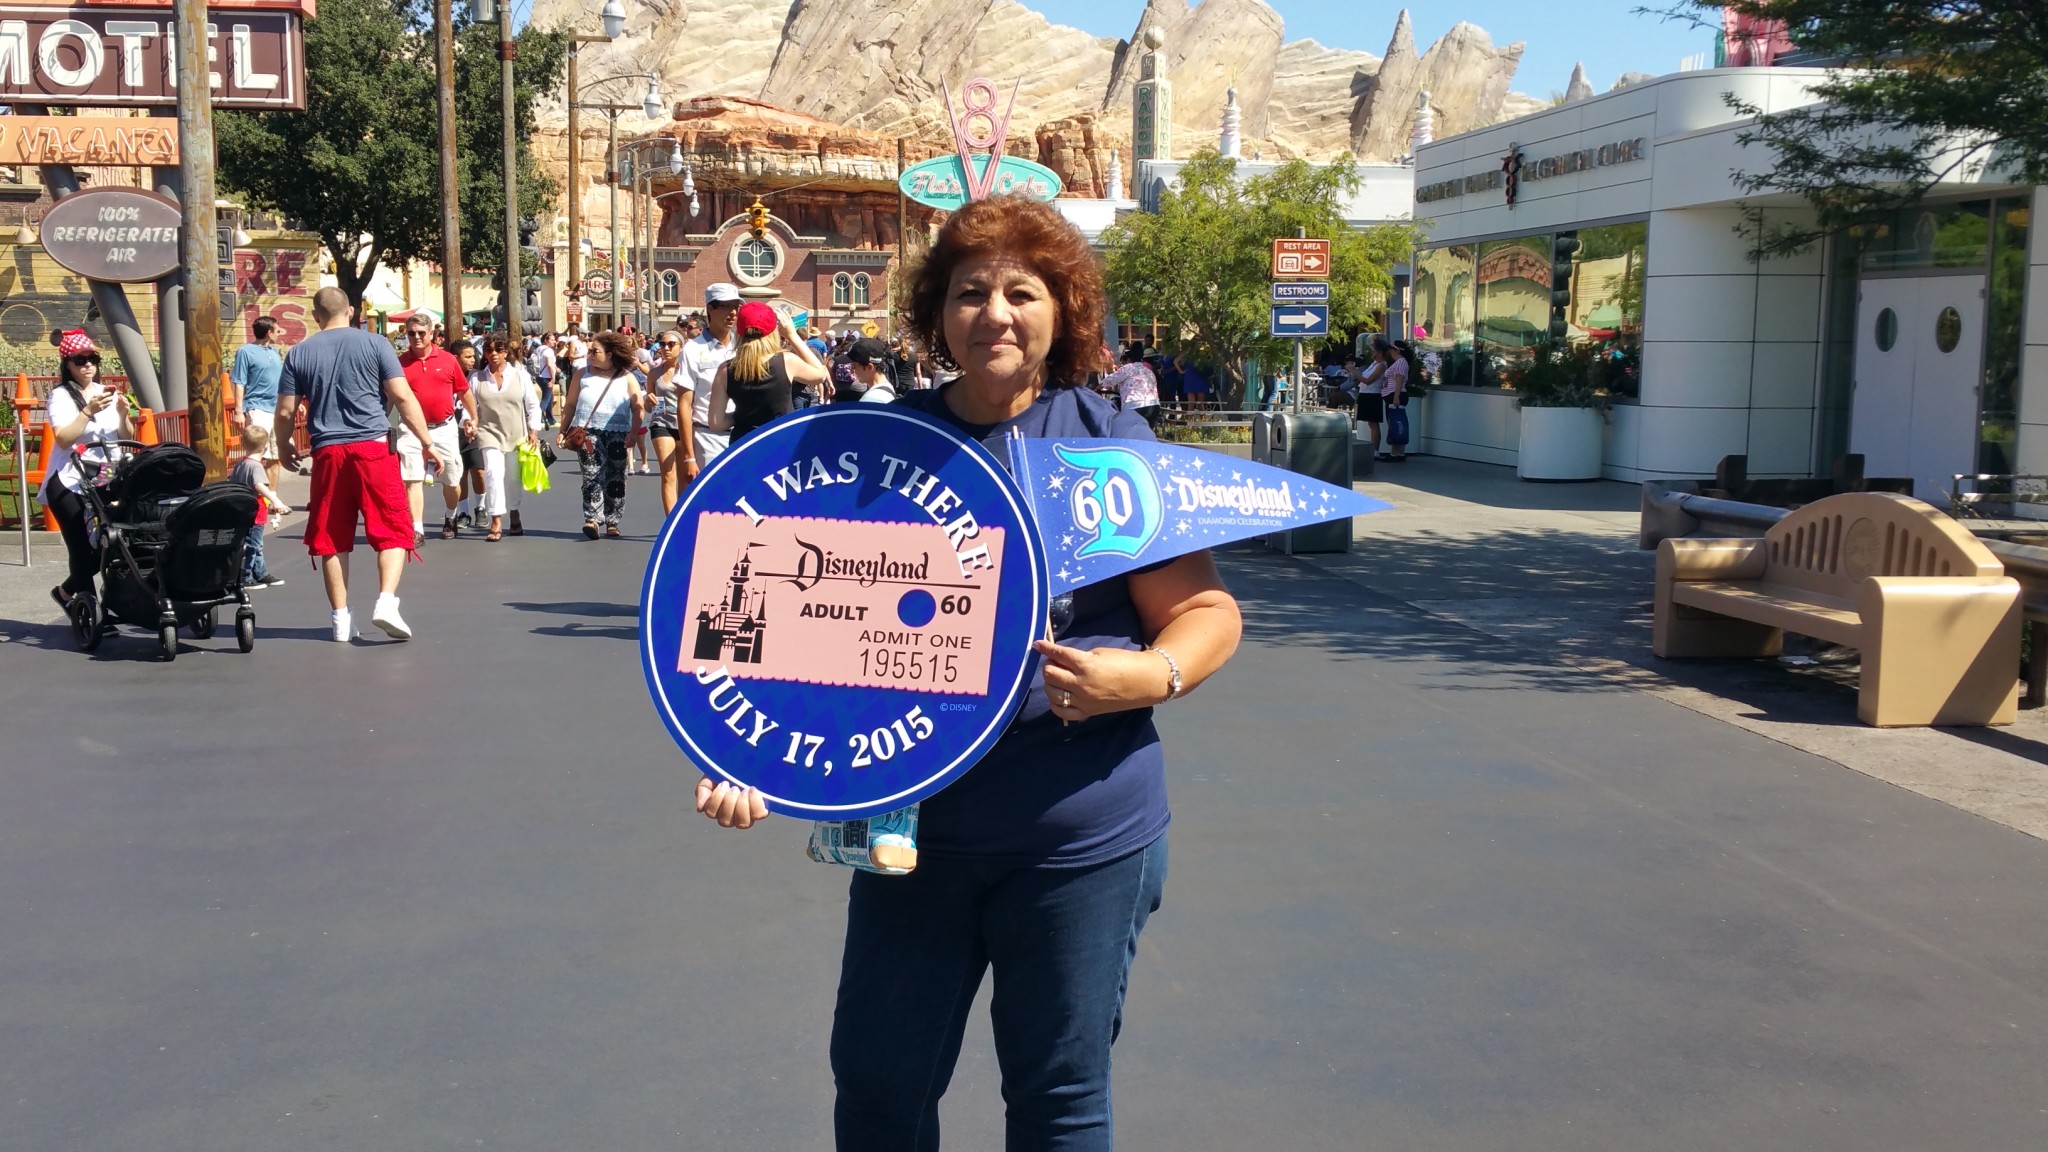 Happy Birthday, Disneyland!